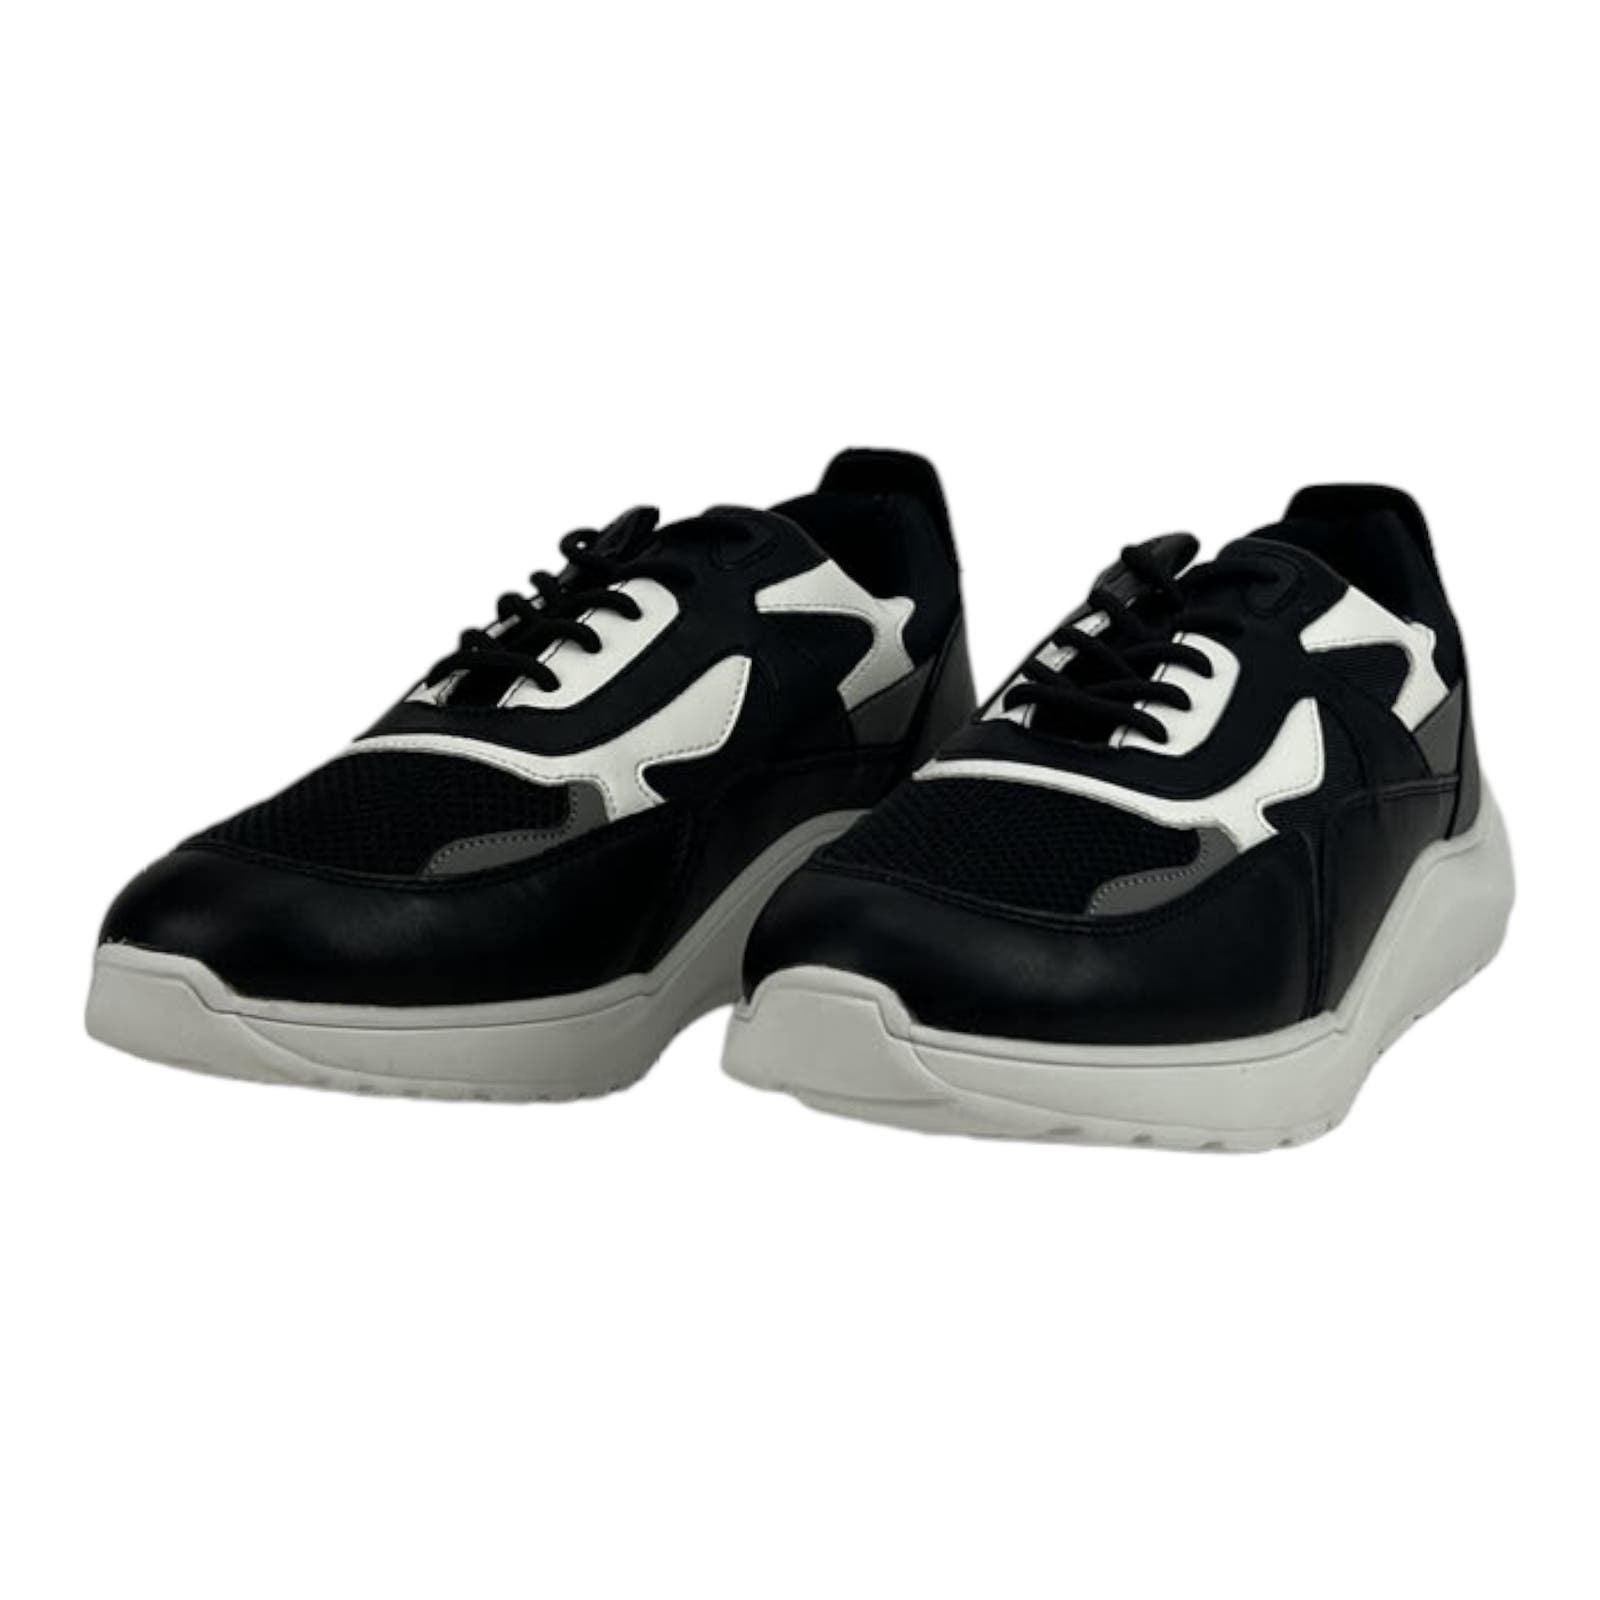 Kingside Men US 9.5 Phillip Black White Athletic Tetoron Laces Moc-Toe Shoes